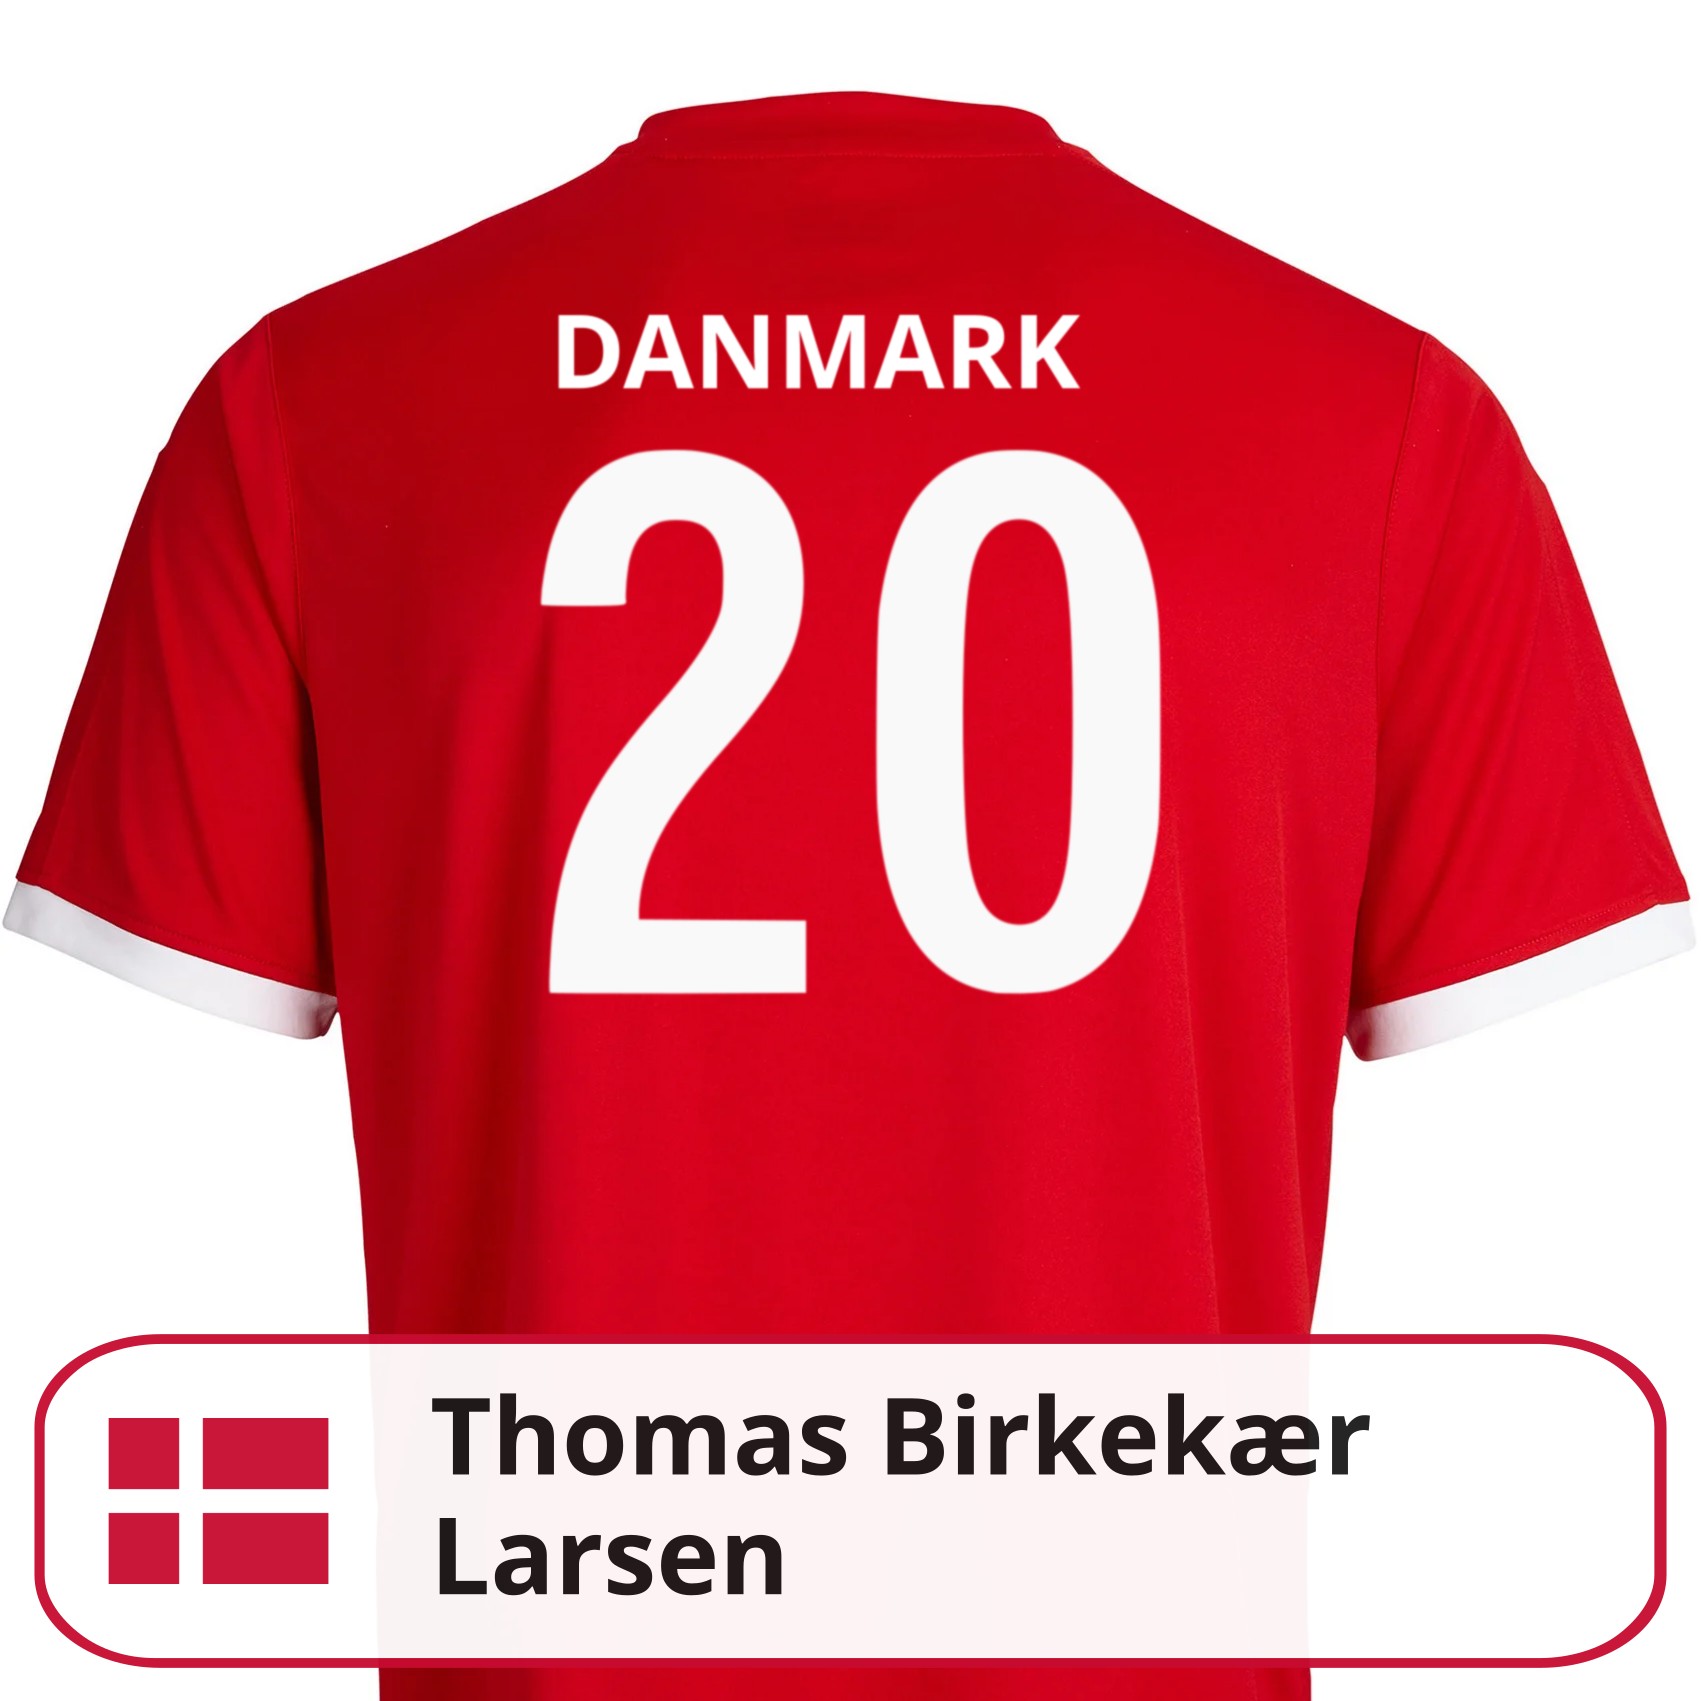 Thomas Birkekær Larsen